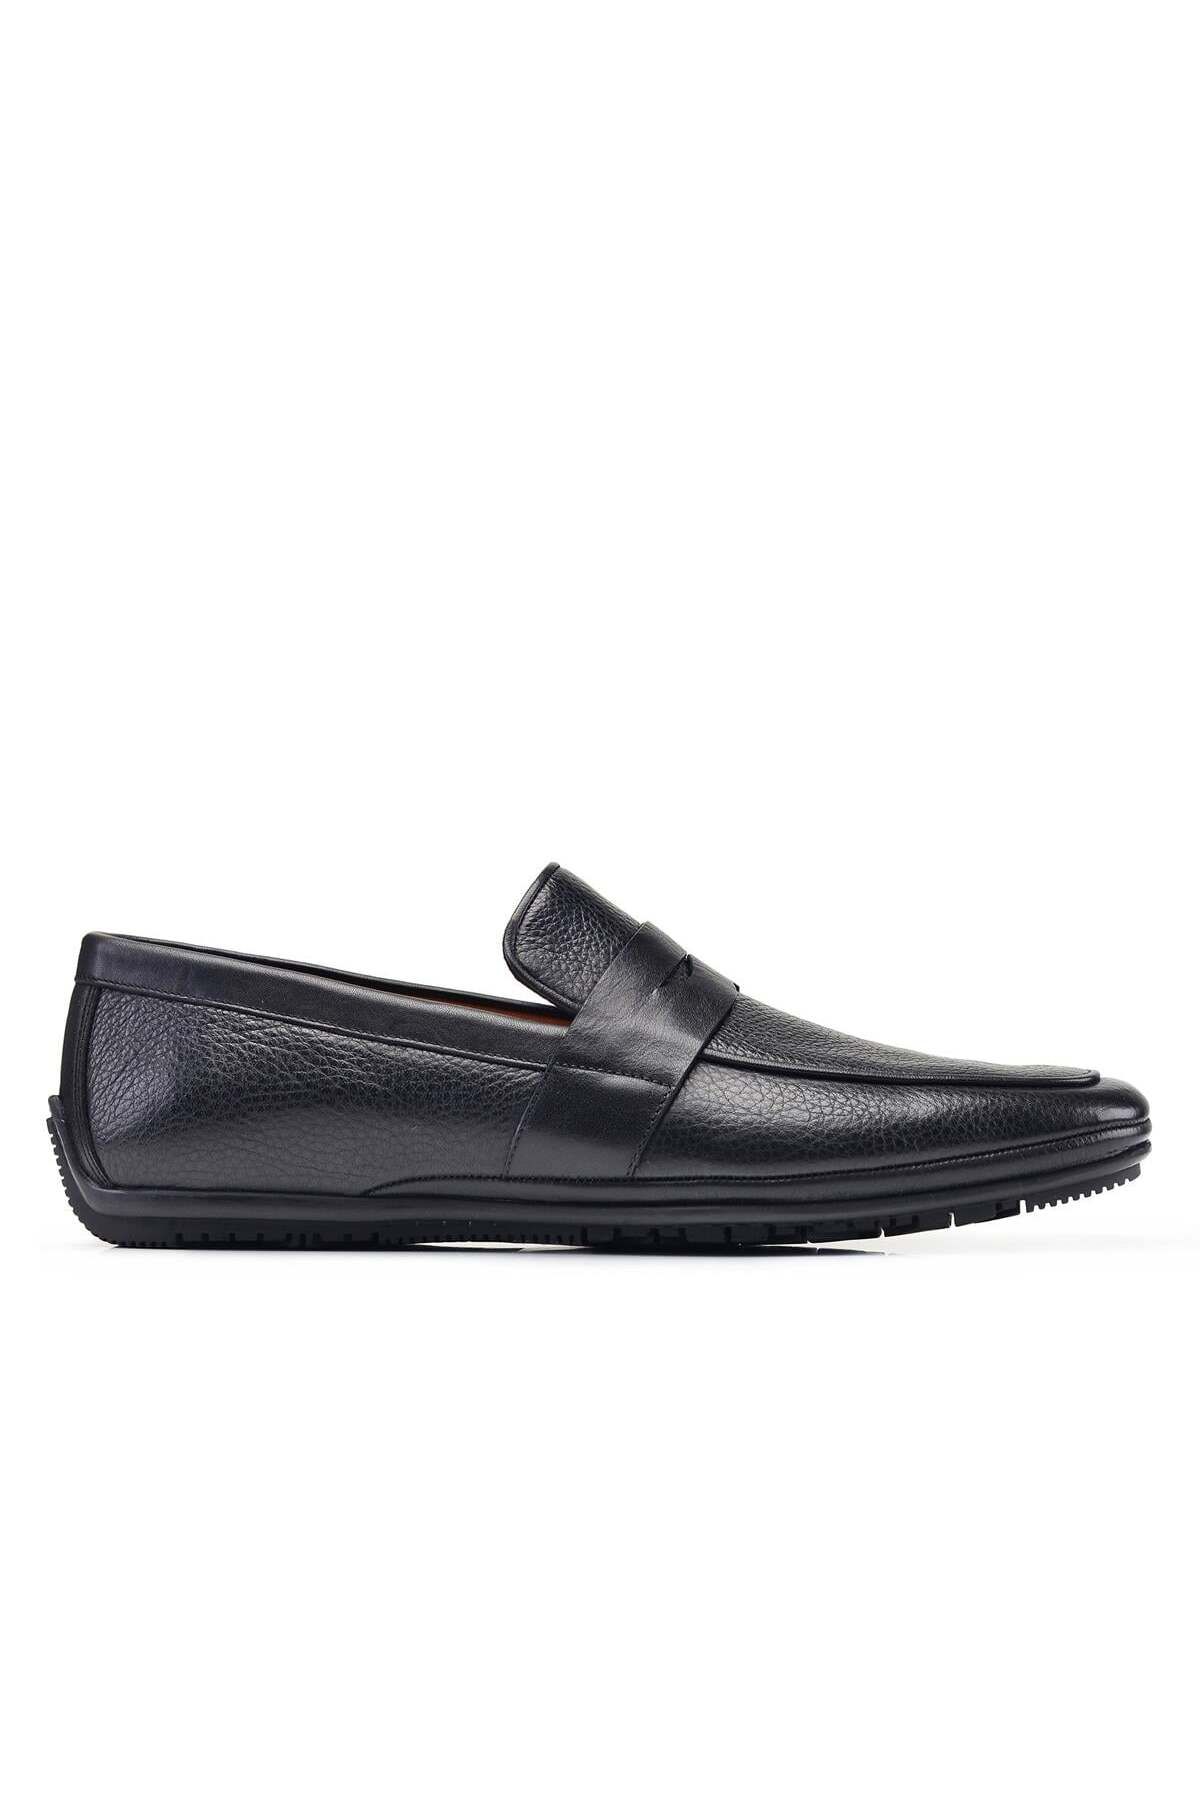 Nevzat Onay Siyah Yazlık Erkek Ayakkabı -27941-